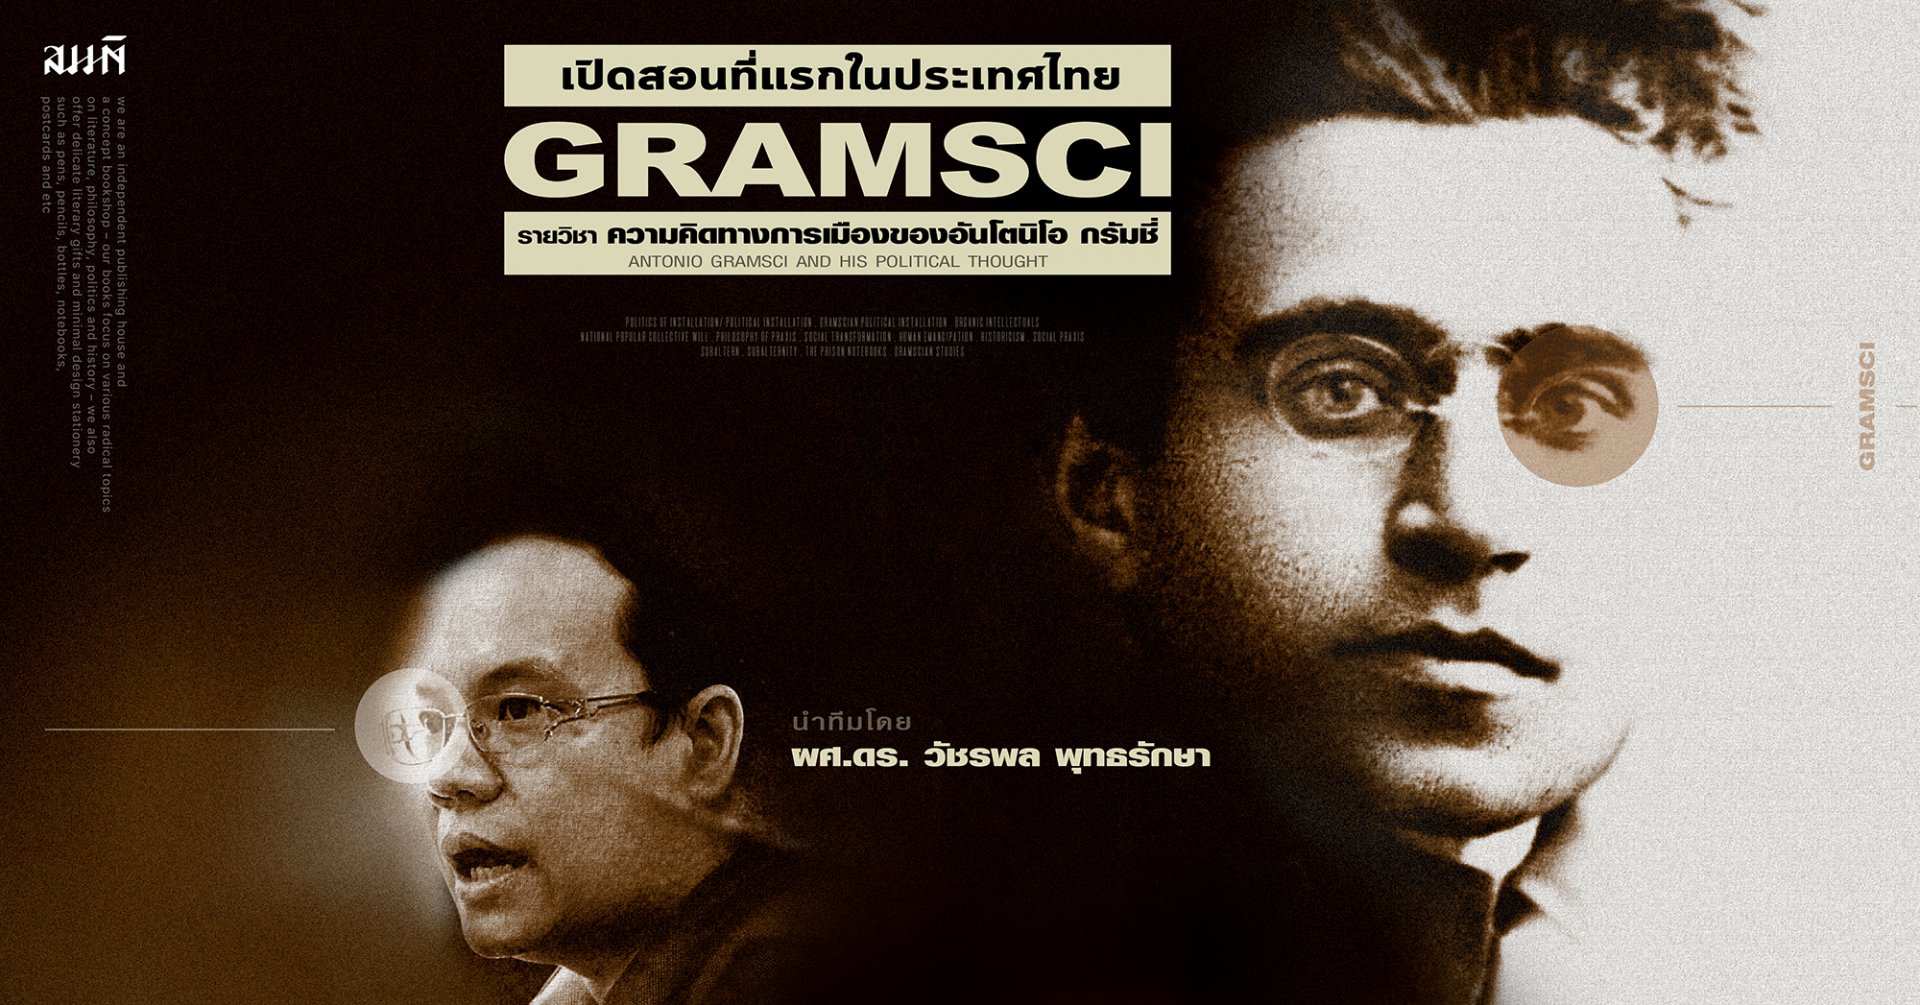 อันโตนิโอ กรัมชี่ | วัชรพล พุทธรักษา - เปิดสอนวิชา Gramsci ที่แรกในไทย